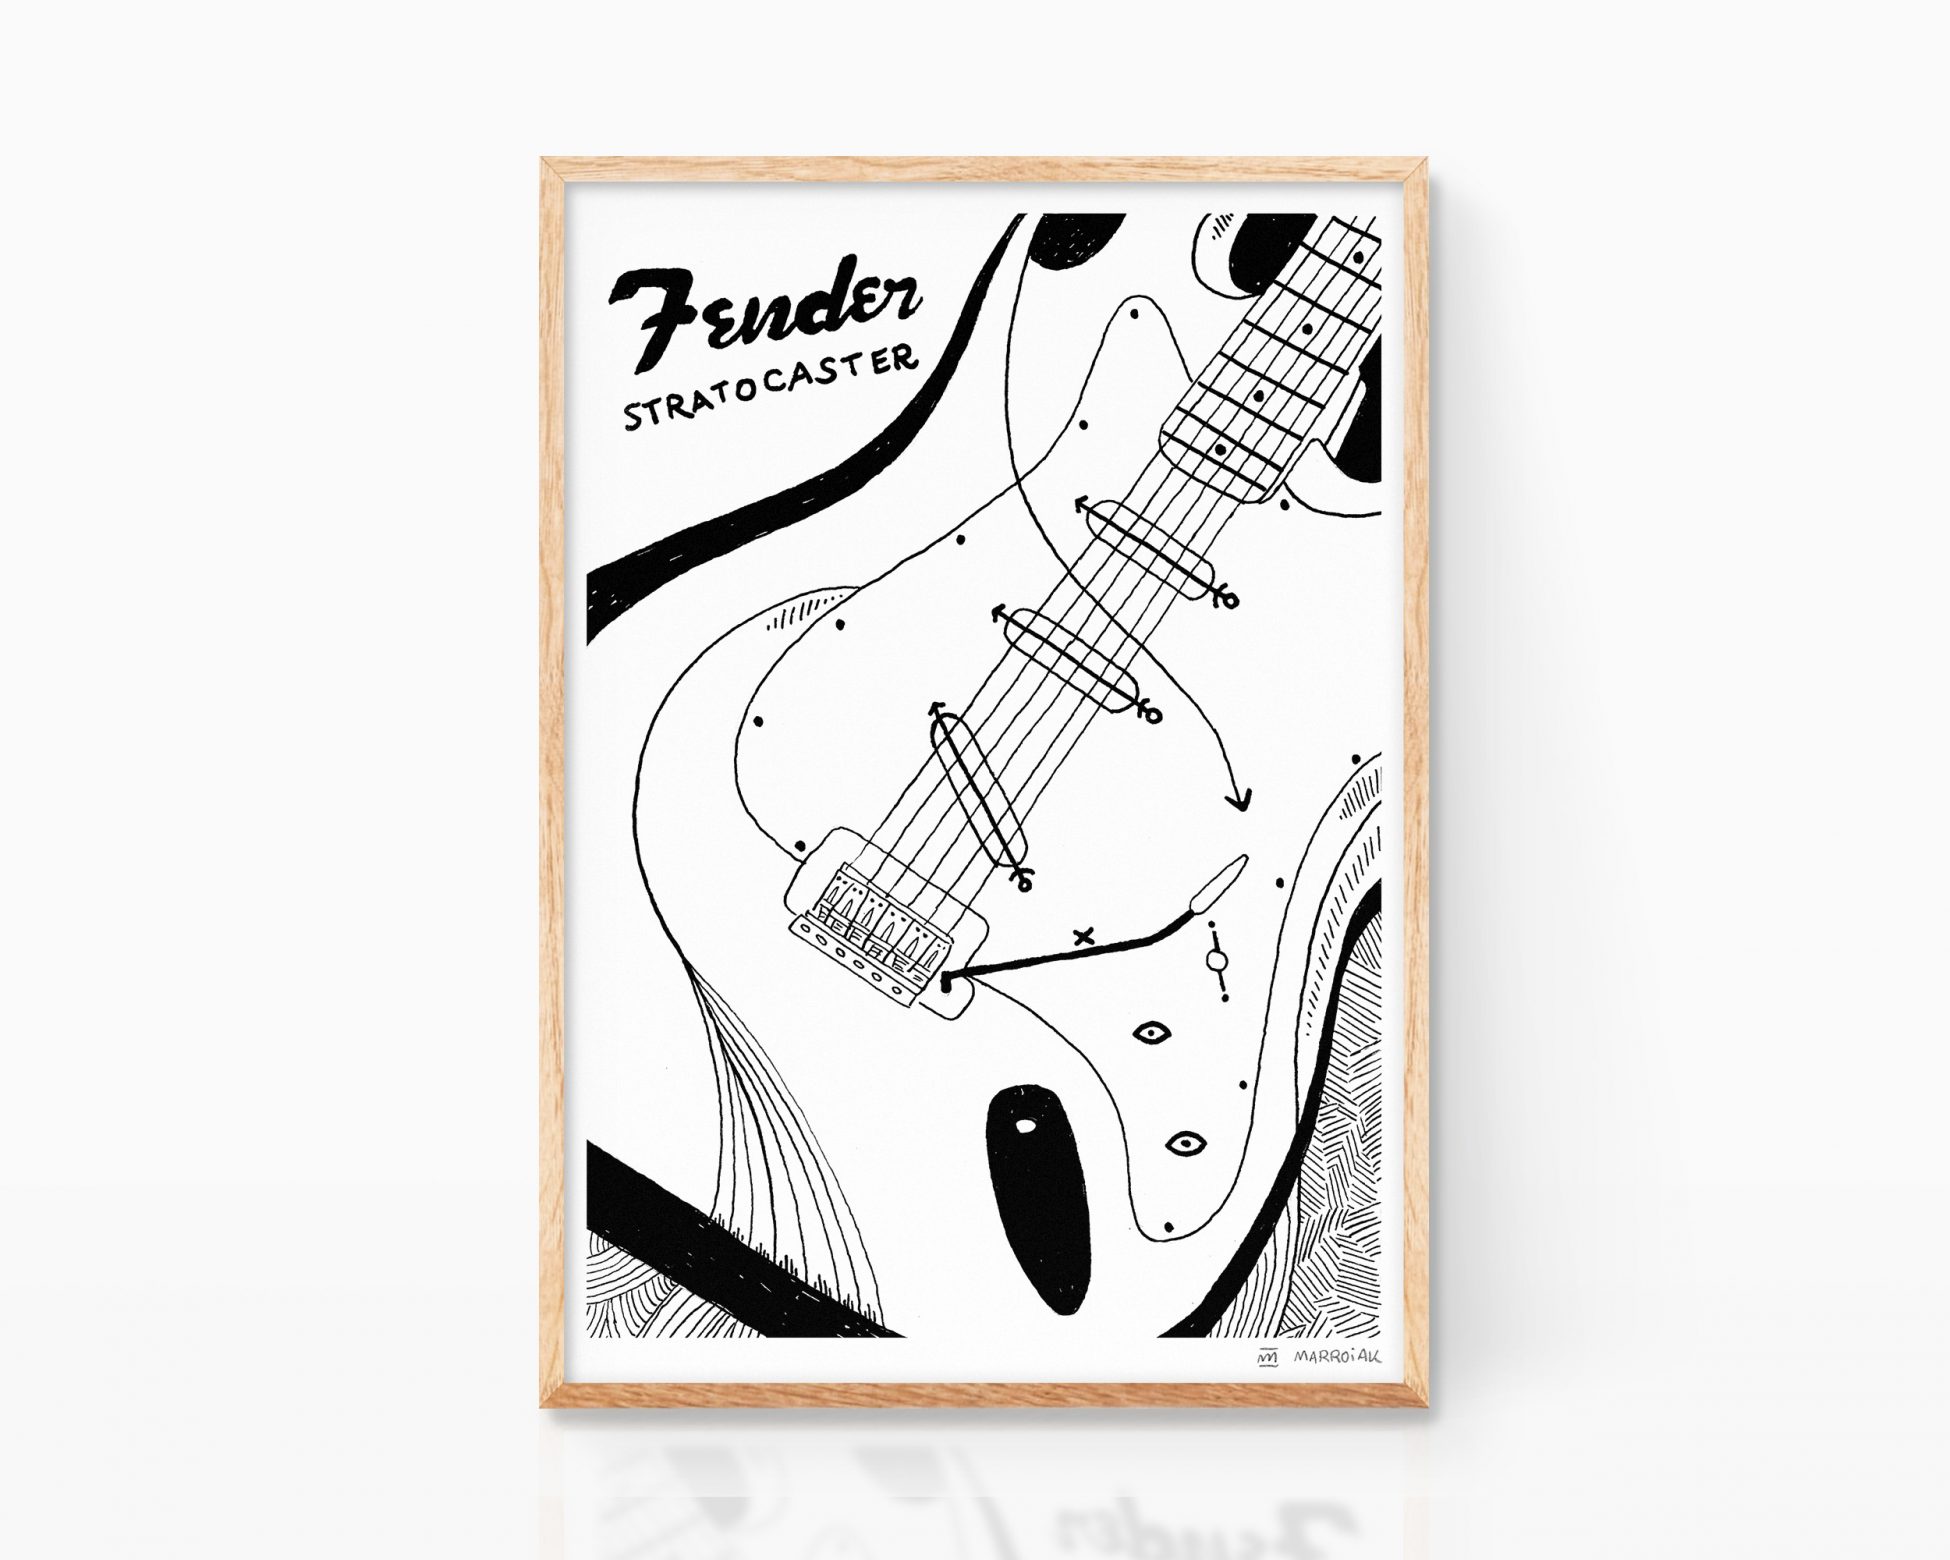 Cuadros de música. Lámina con una ilustración de una guitarra Fender Stratocaster dibujada en blanco y negro y en estilo cubista y moderno. Regalo para guitarristas.